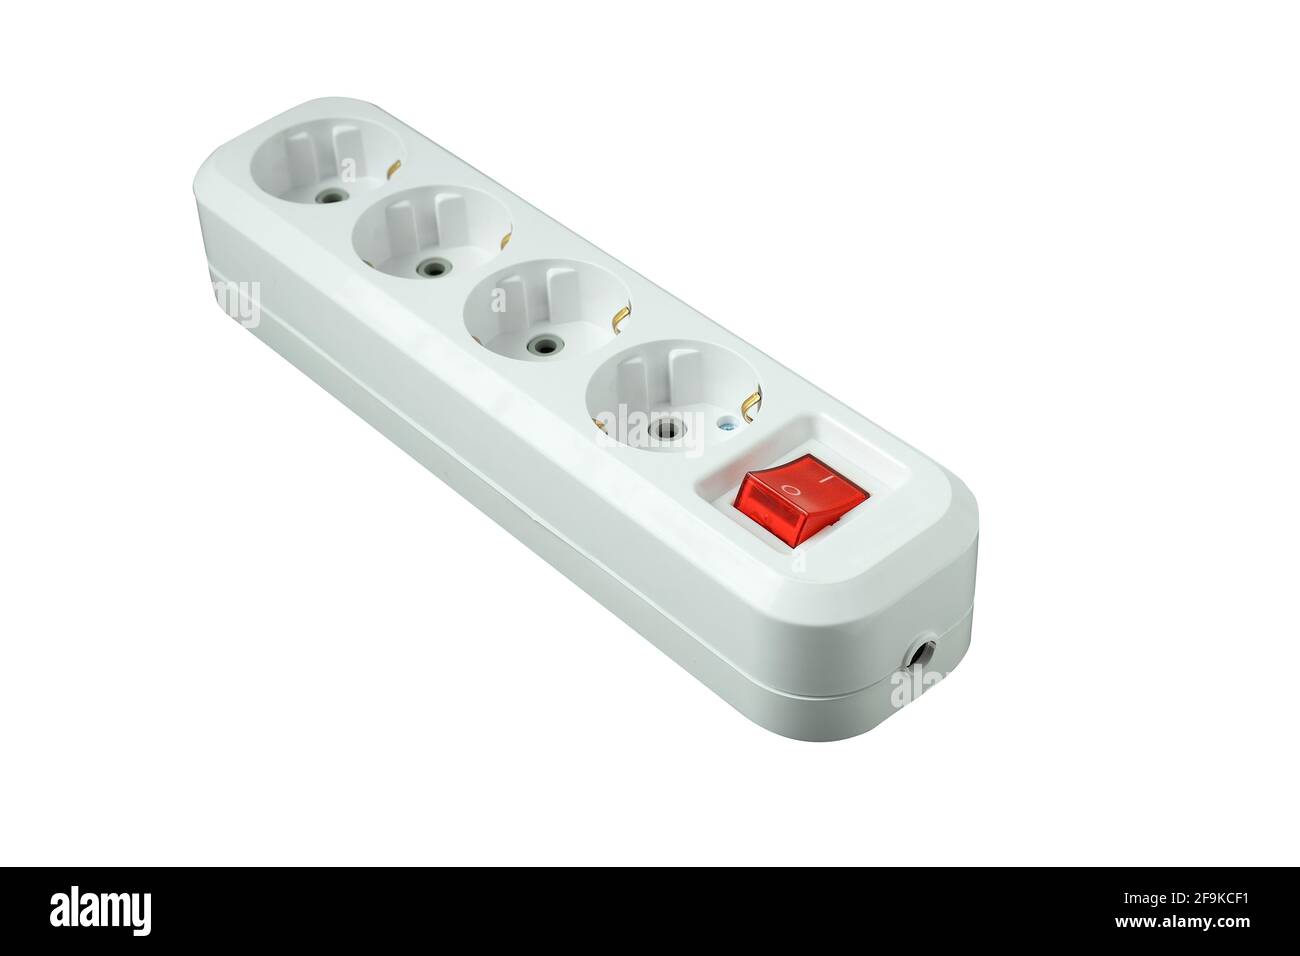 Il s'agit d'un répartiteur électrique pour quatre prises avec un bouton d'alimentation. Isolé sur un fond blanc. Parasurtenseur blanc avec bouton rouge. Banque D'Images